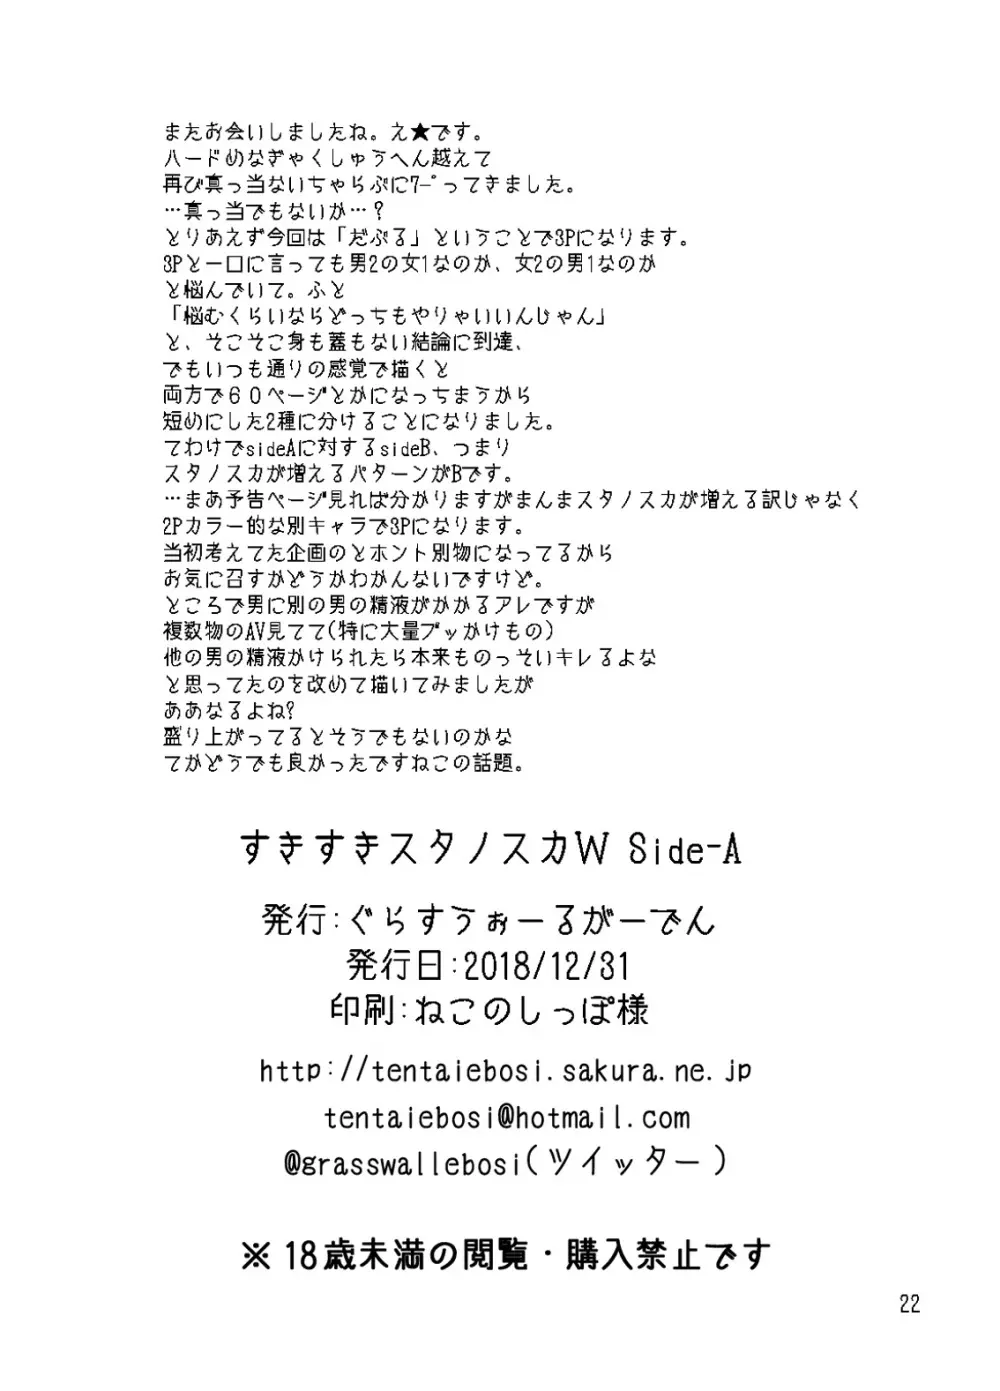 すきすきスタノスカW side-A 22ページ